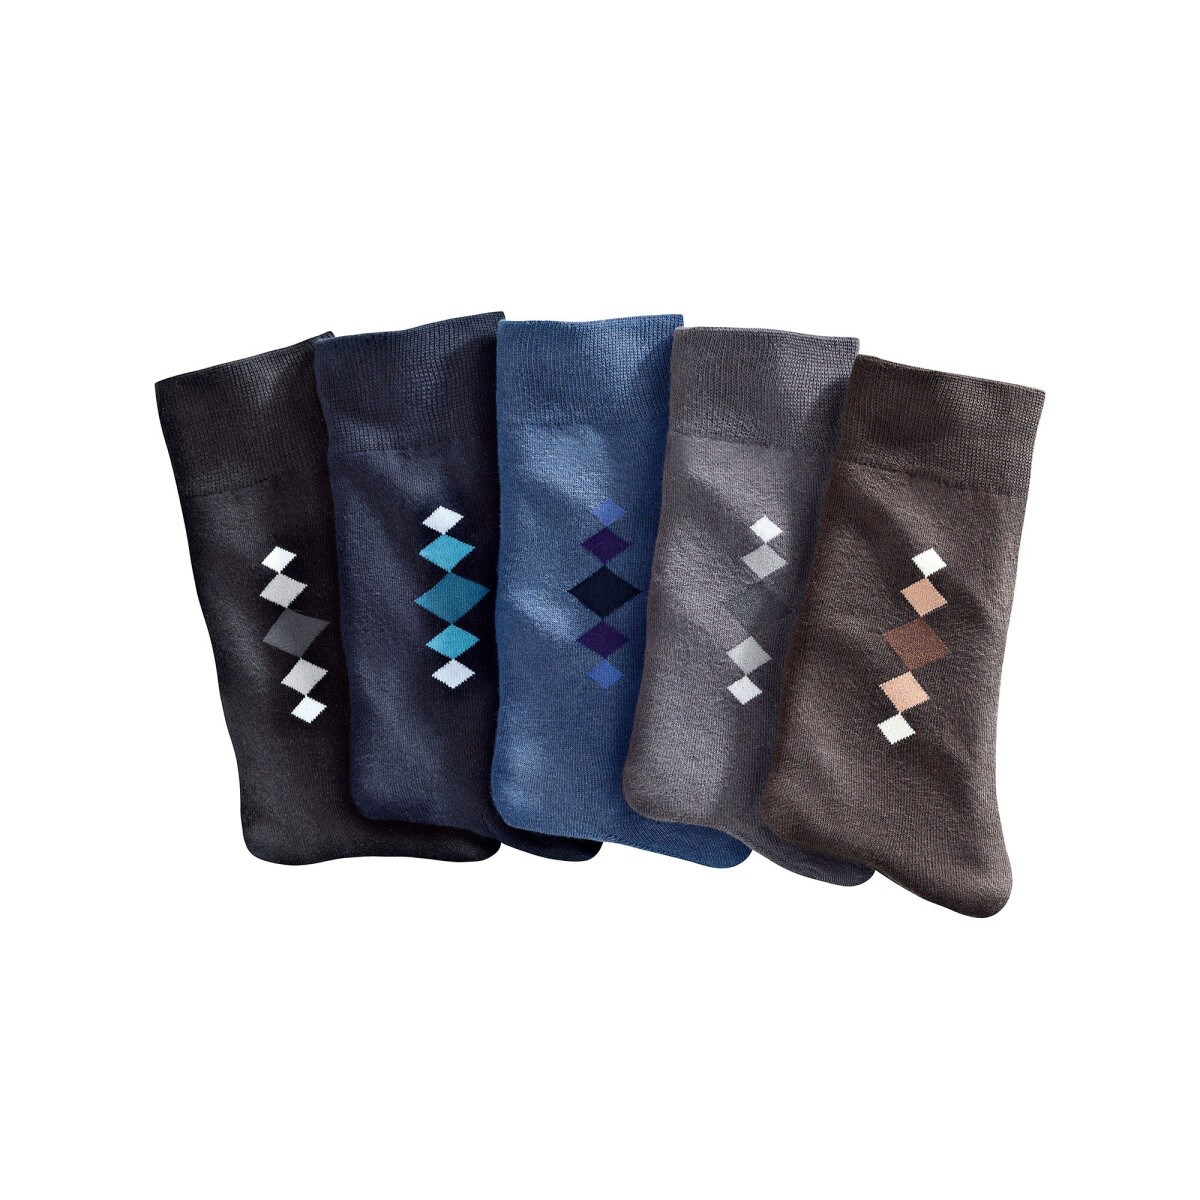 Ponožky s barevným motivem, sada 5 párů